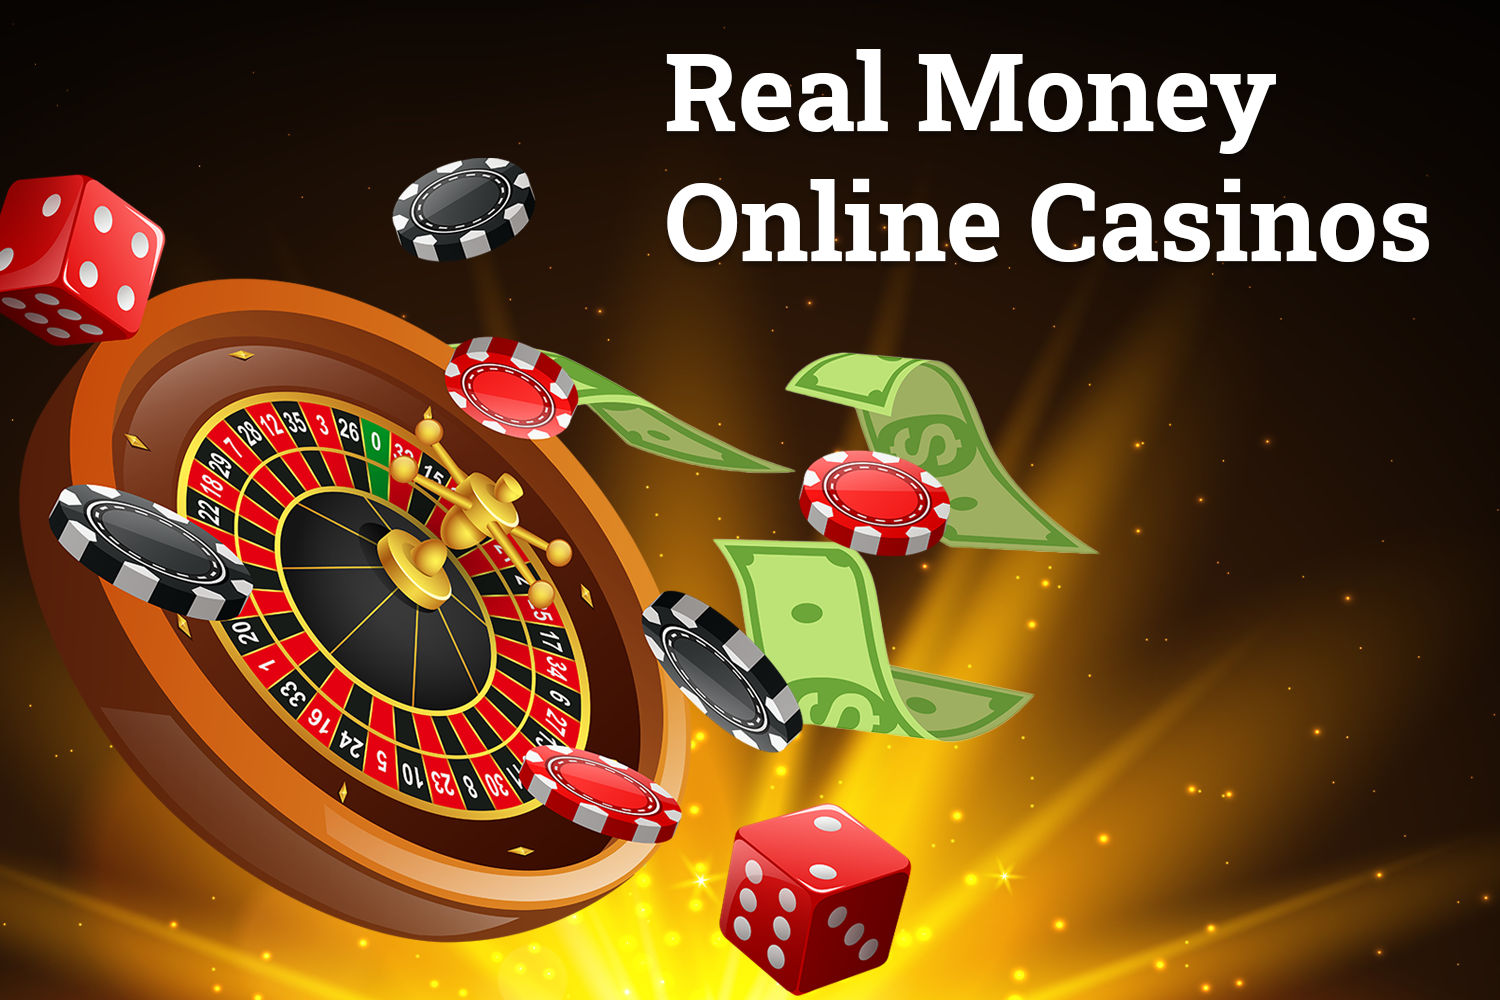 Real money online casinos tvnf ksda